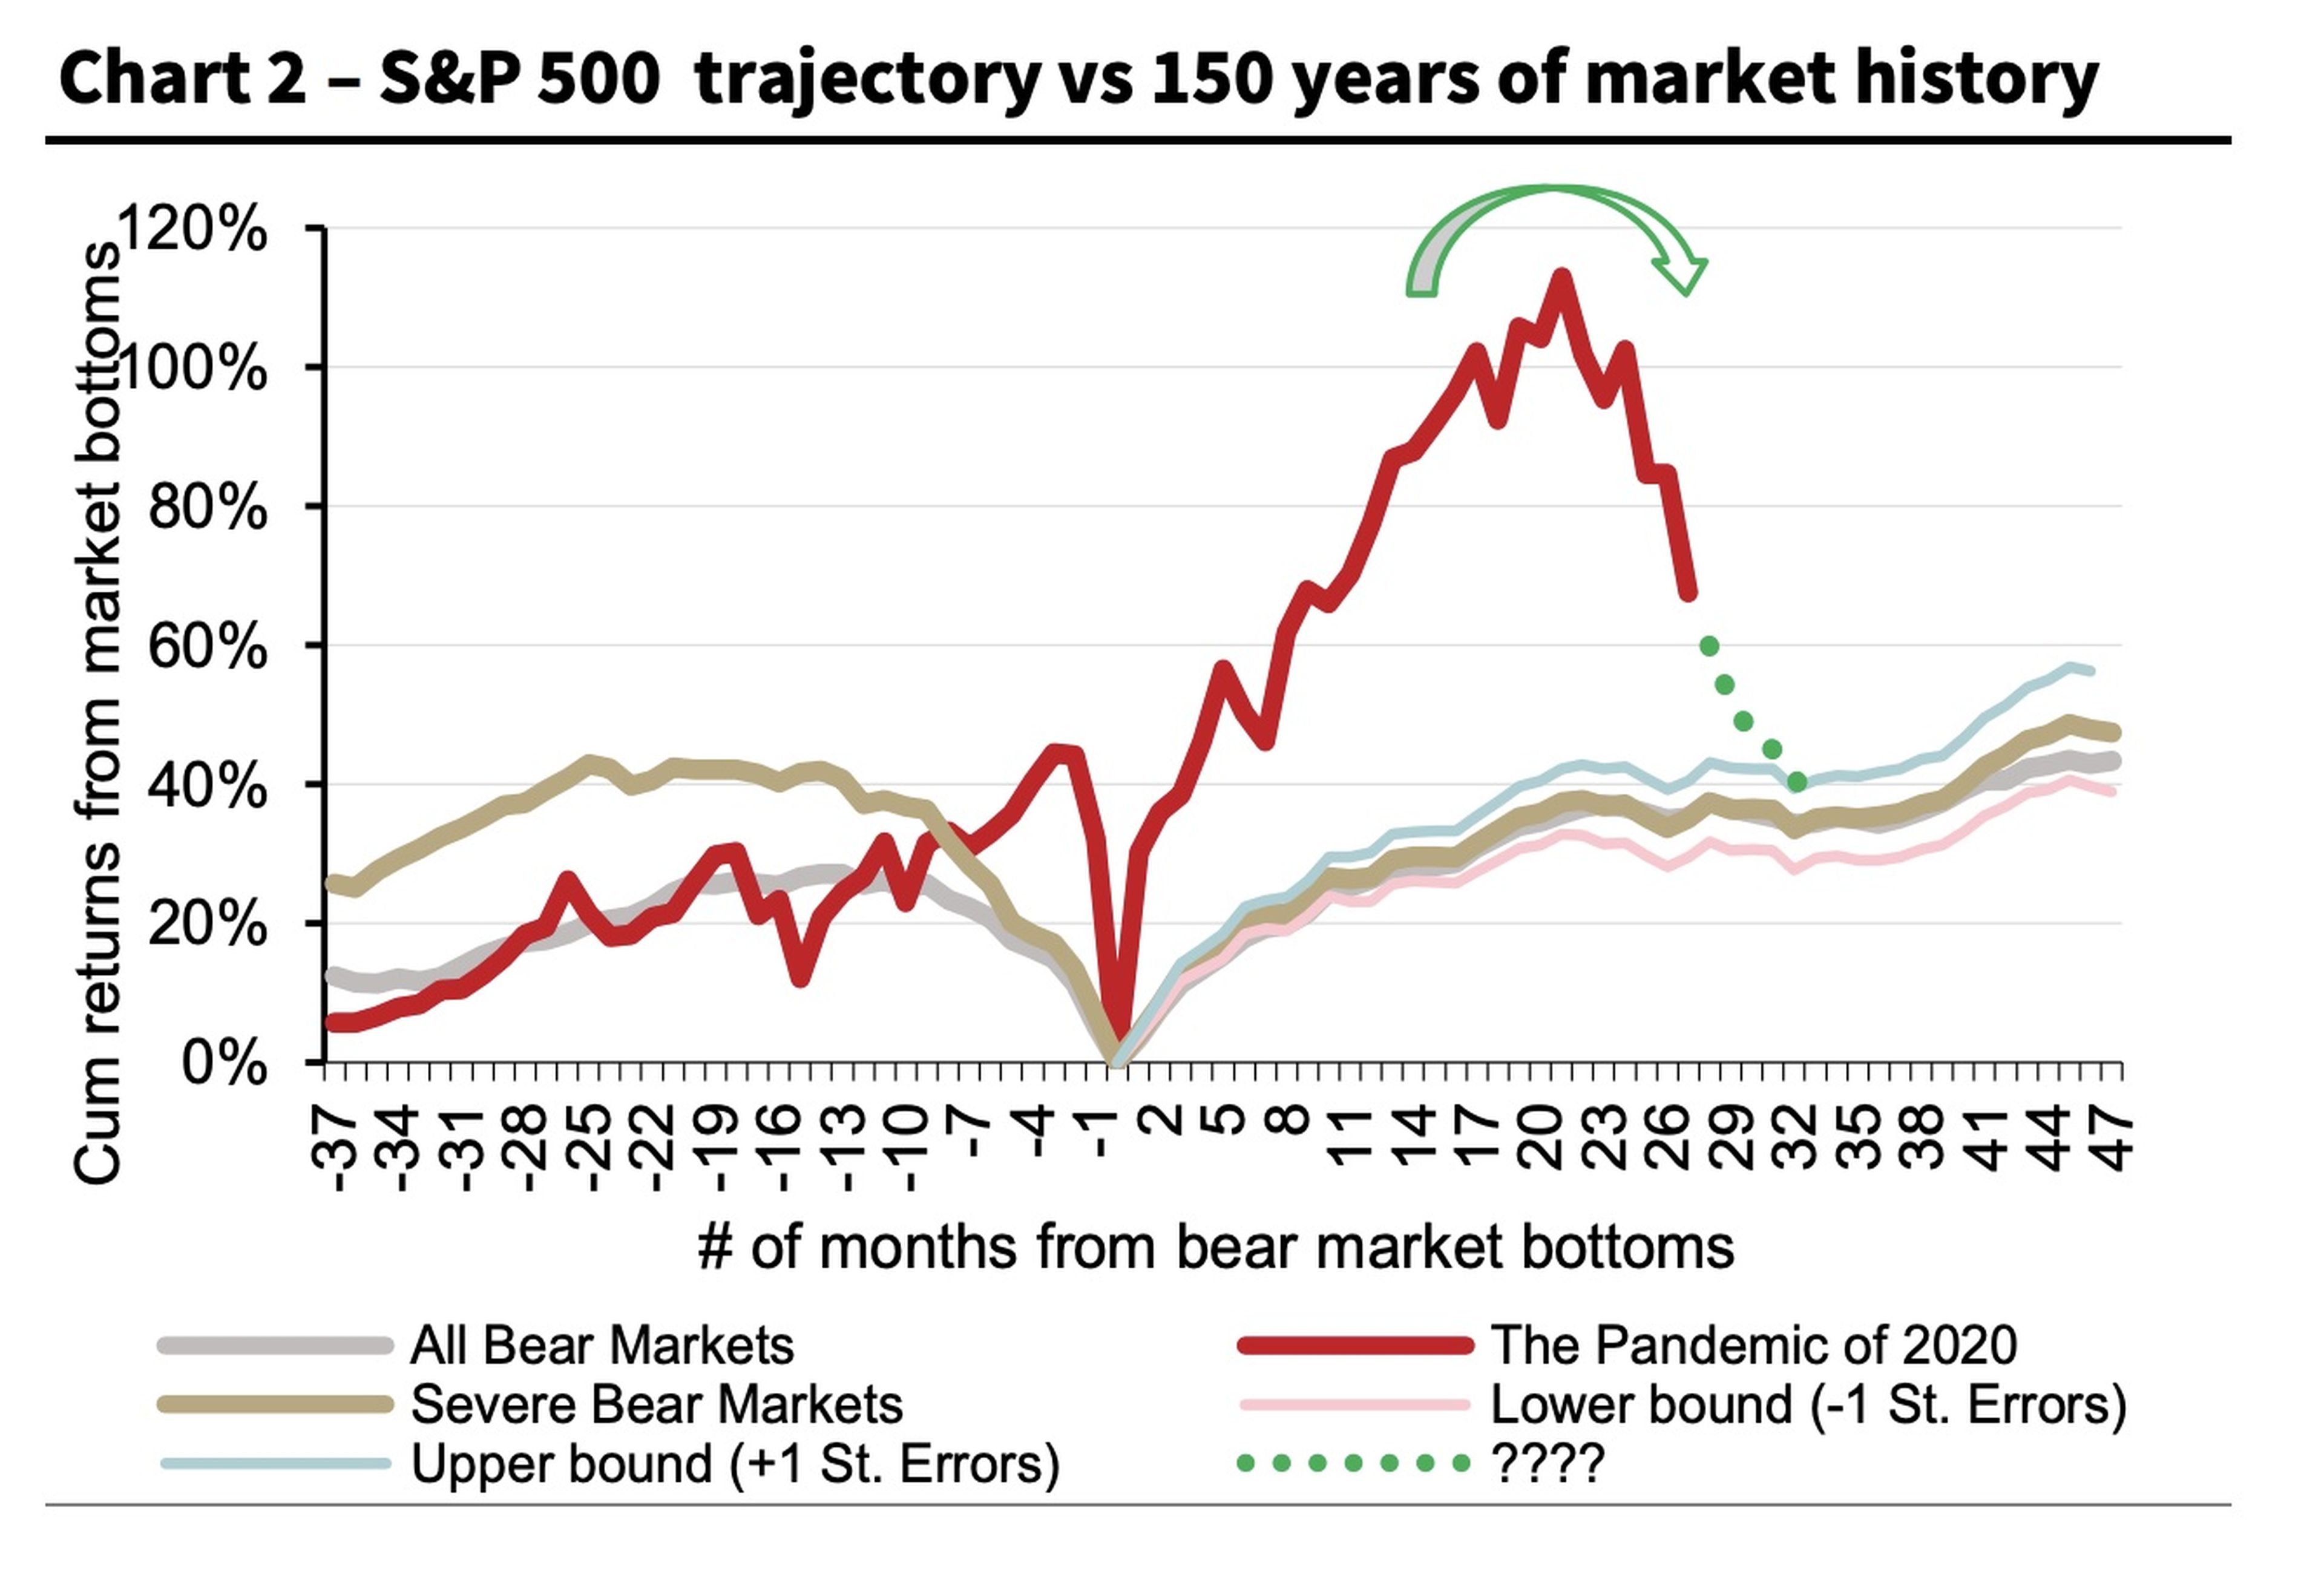 Trayectoria del S&P 500 vs historia del mercado de los últimos 150 años.